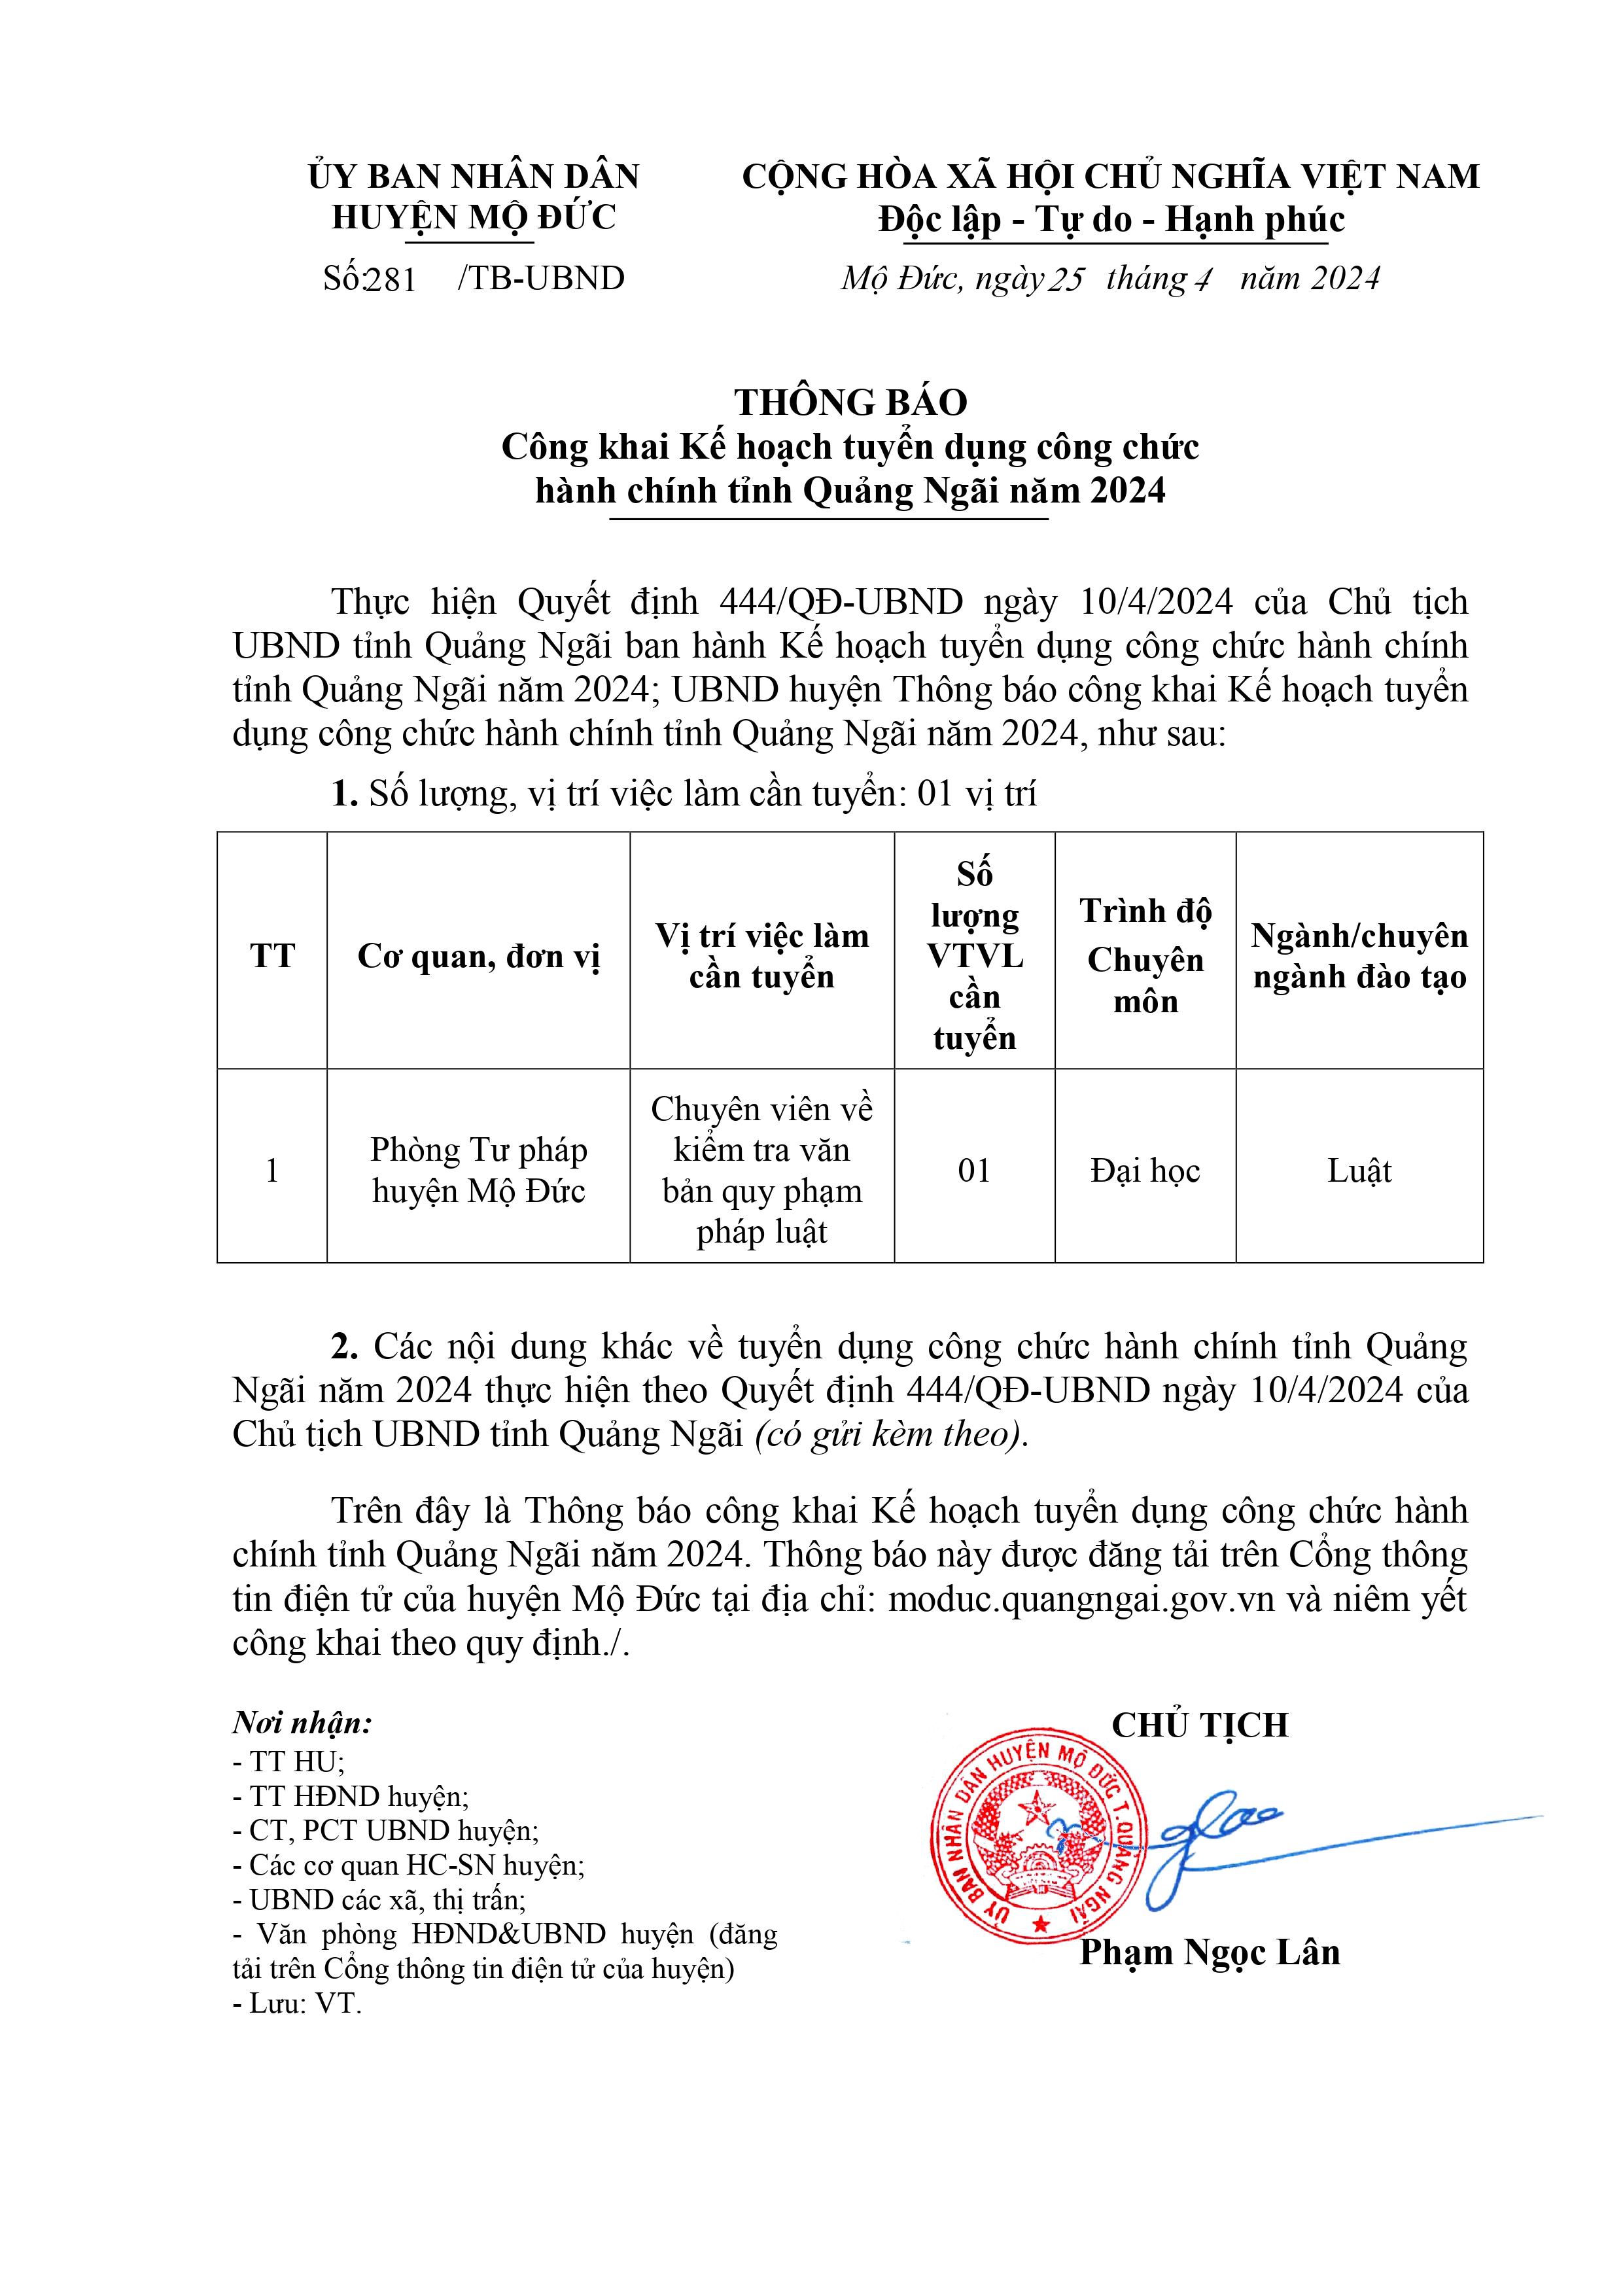 THÔNG BÁO Công khai Kế hoạch tuyển dụng công chức hành chính tỉnh Quảng Ngãi năm 2024